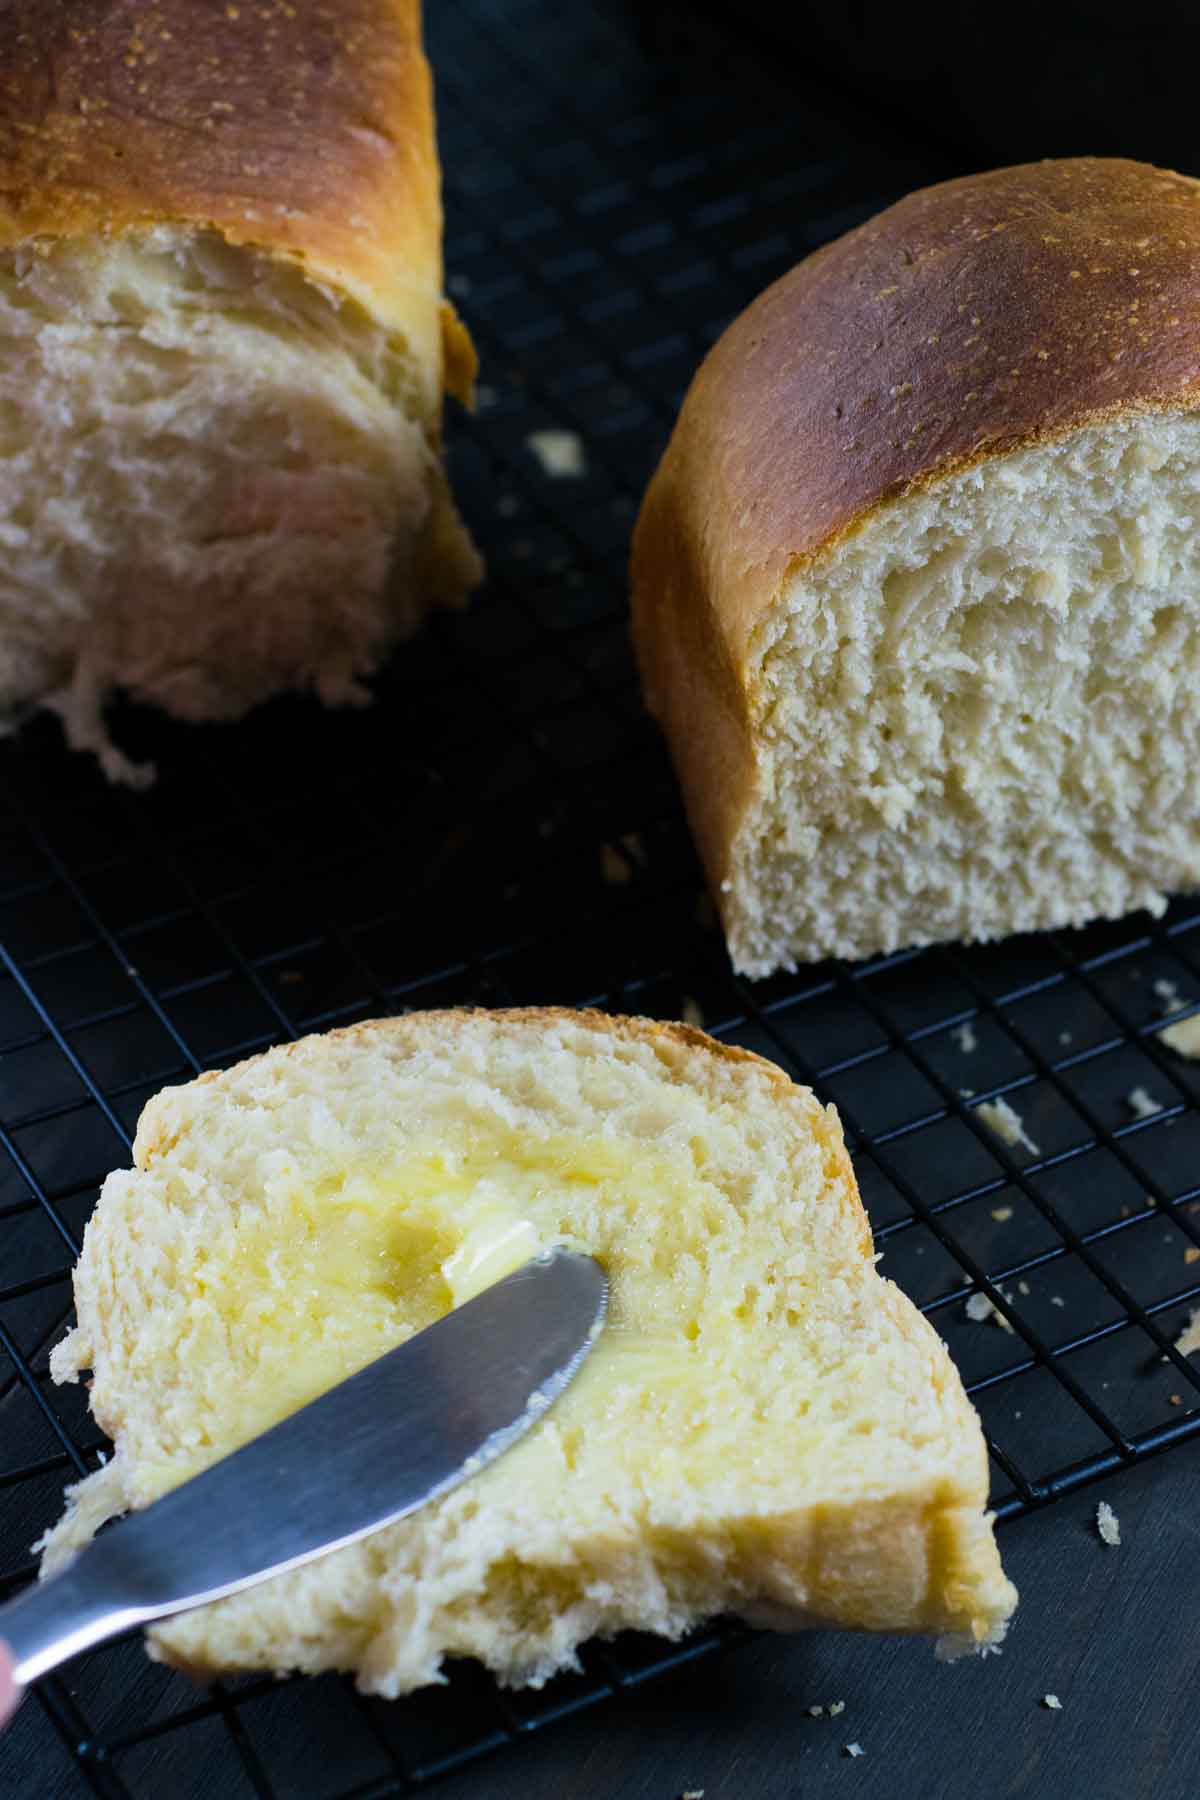 Imagem mostrando manteiga sendo espalhada em uma fatia de pão caseiro